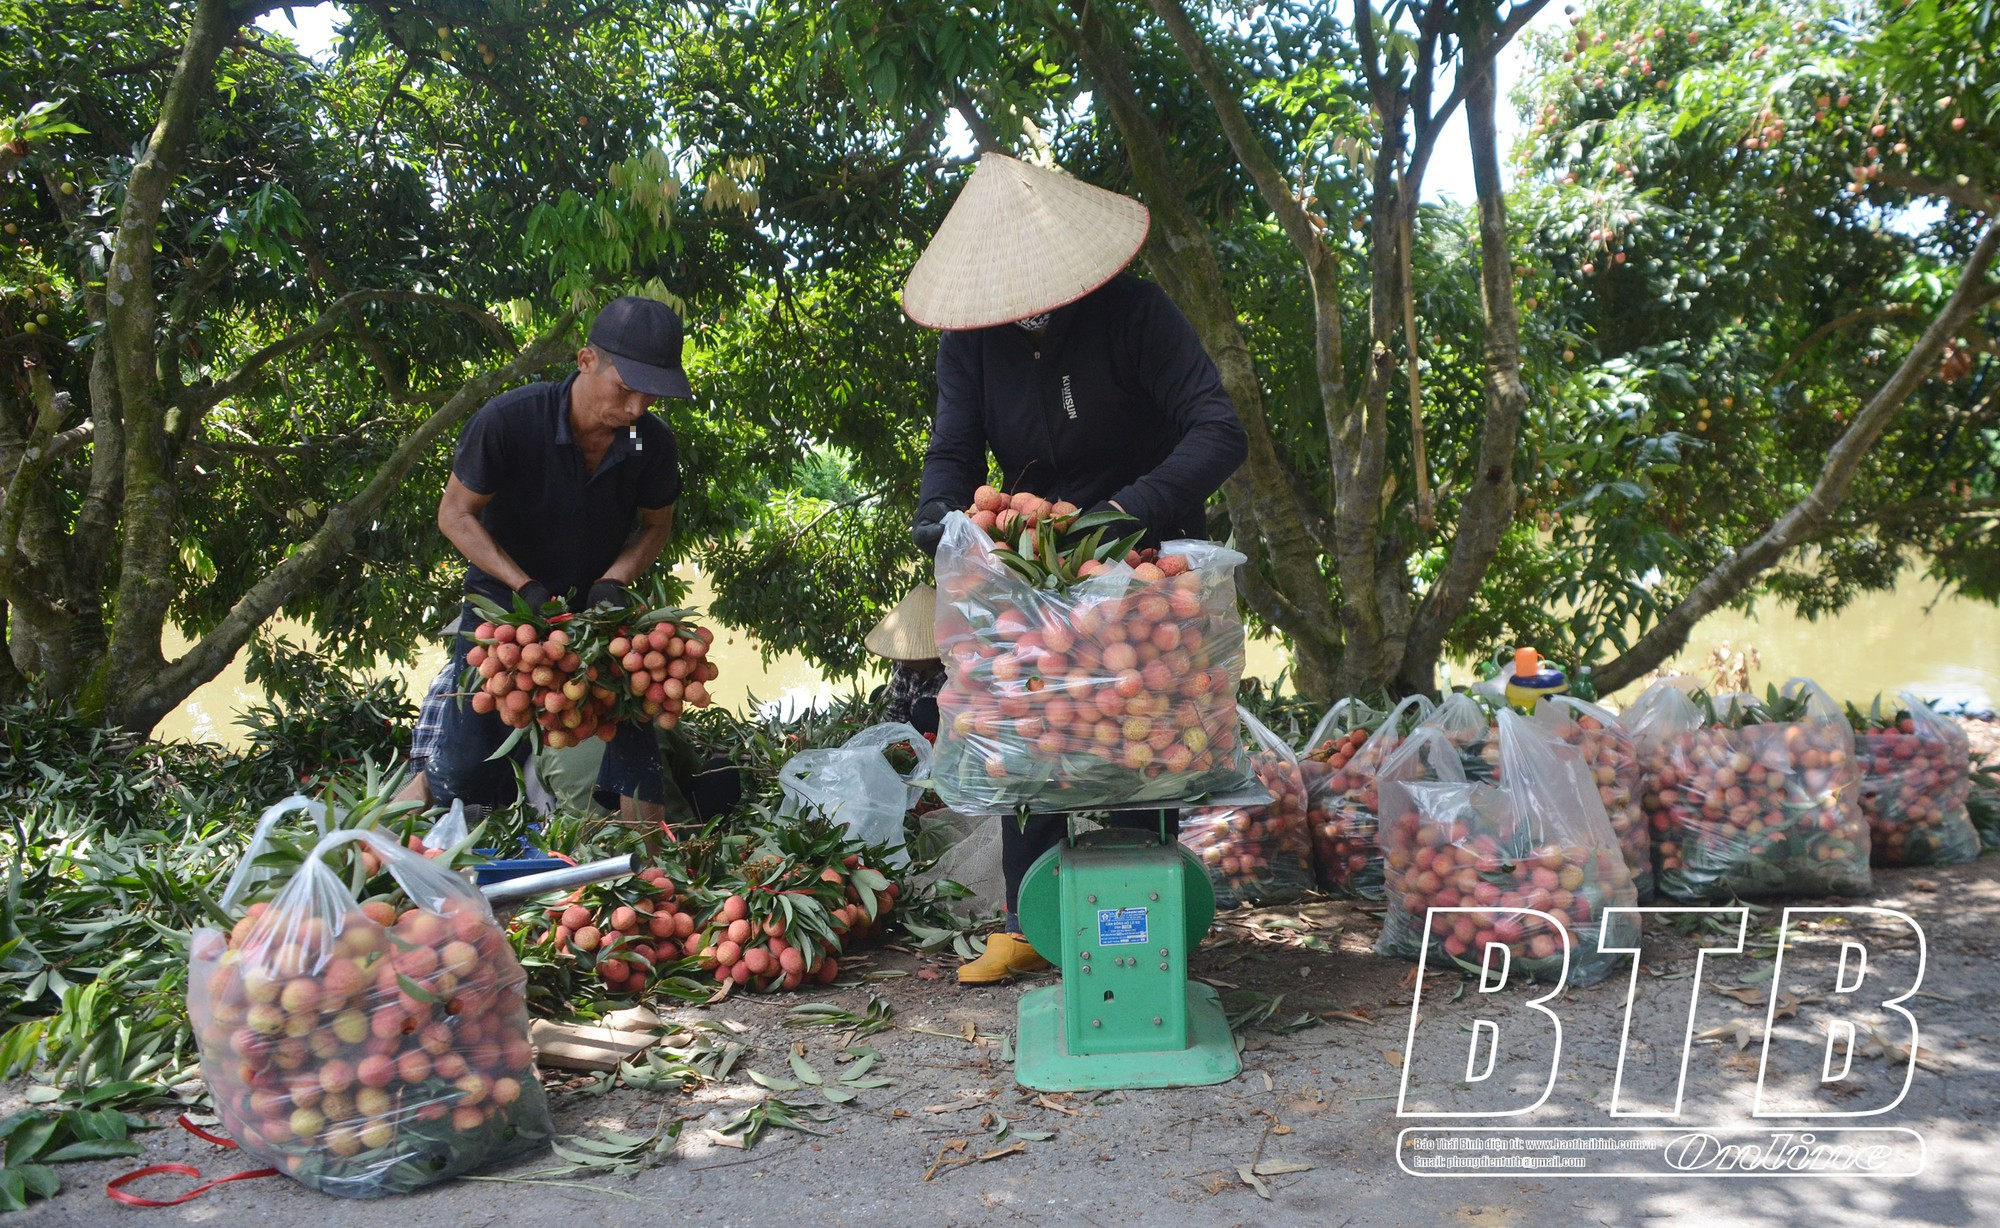 Vùng đất này của Thái Bình có vườn cây 20 năm tuổi, cứ mùa hè là trái chín đỏ rực cả một khúc sông - Ảnh 1.